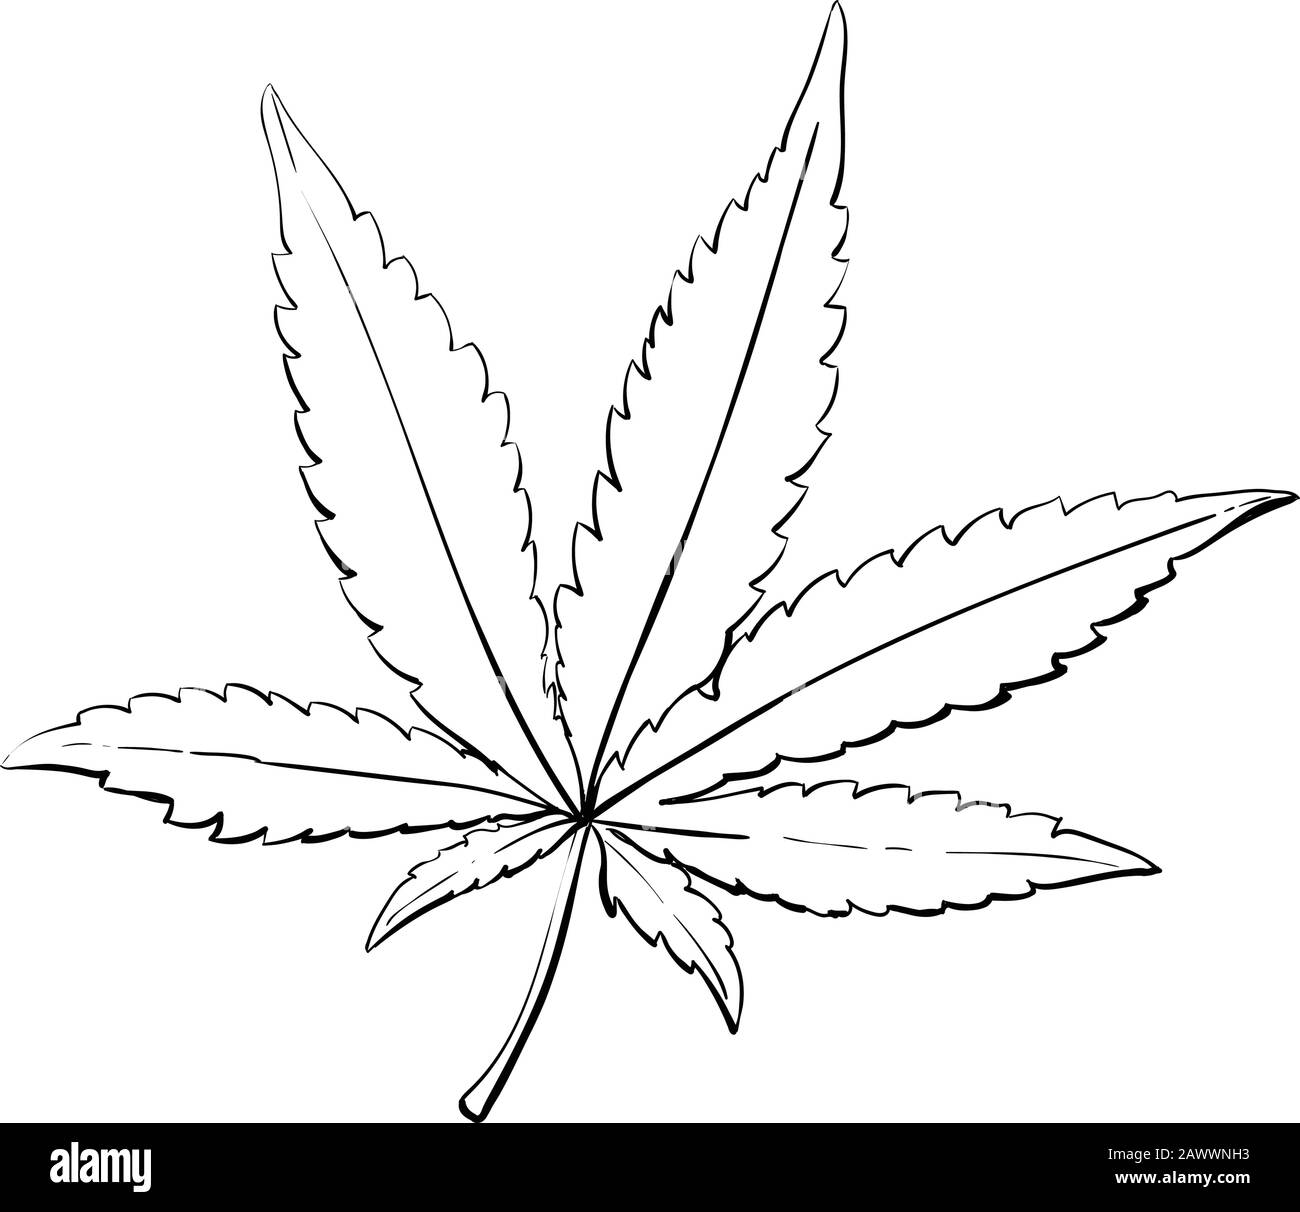 Hoja de cannabis o marihuana. Cosecha. Dibujo realista de la mano.  Ilustración vectorial de estilo de grabado Imagen Vector de stock - Alamy